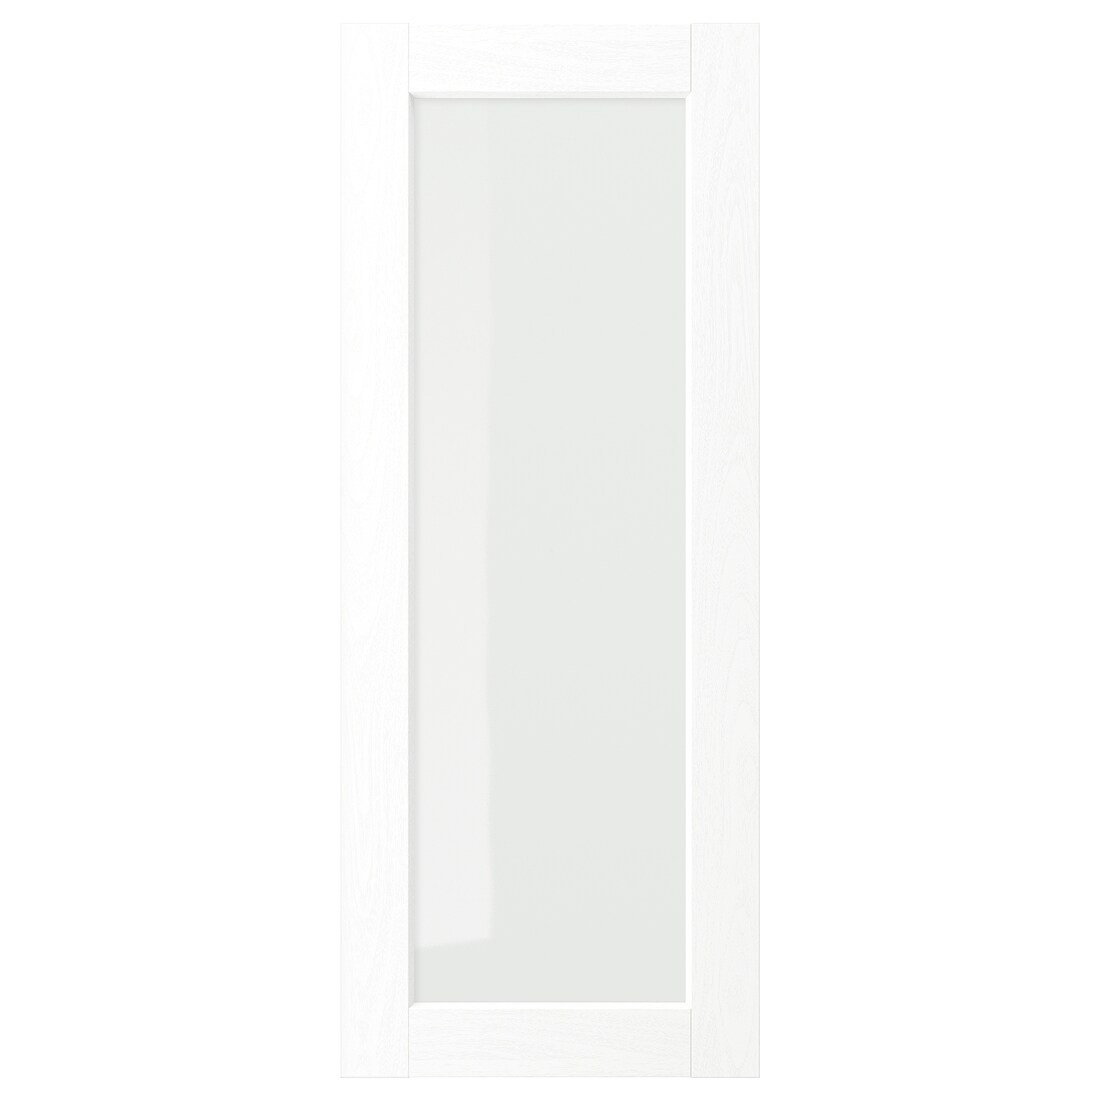 ENKÖPING Стеклянная дверь, белый имитация дерева, 40x100 см